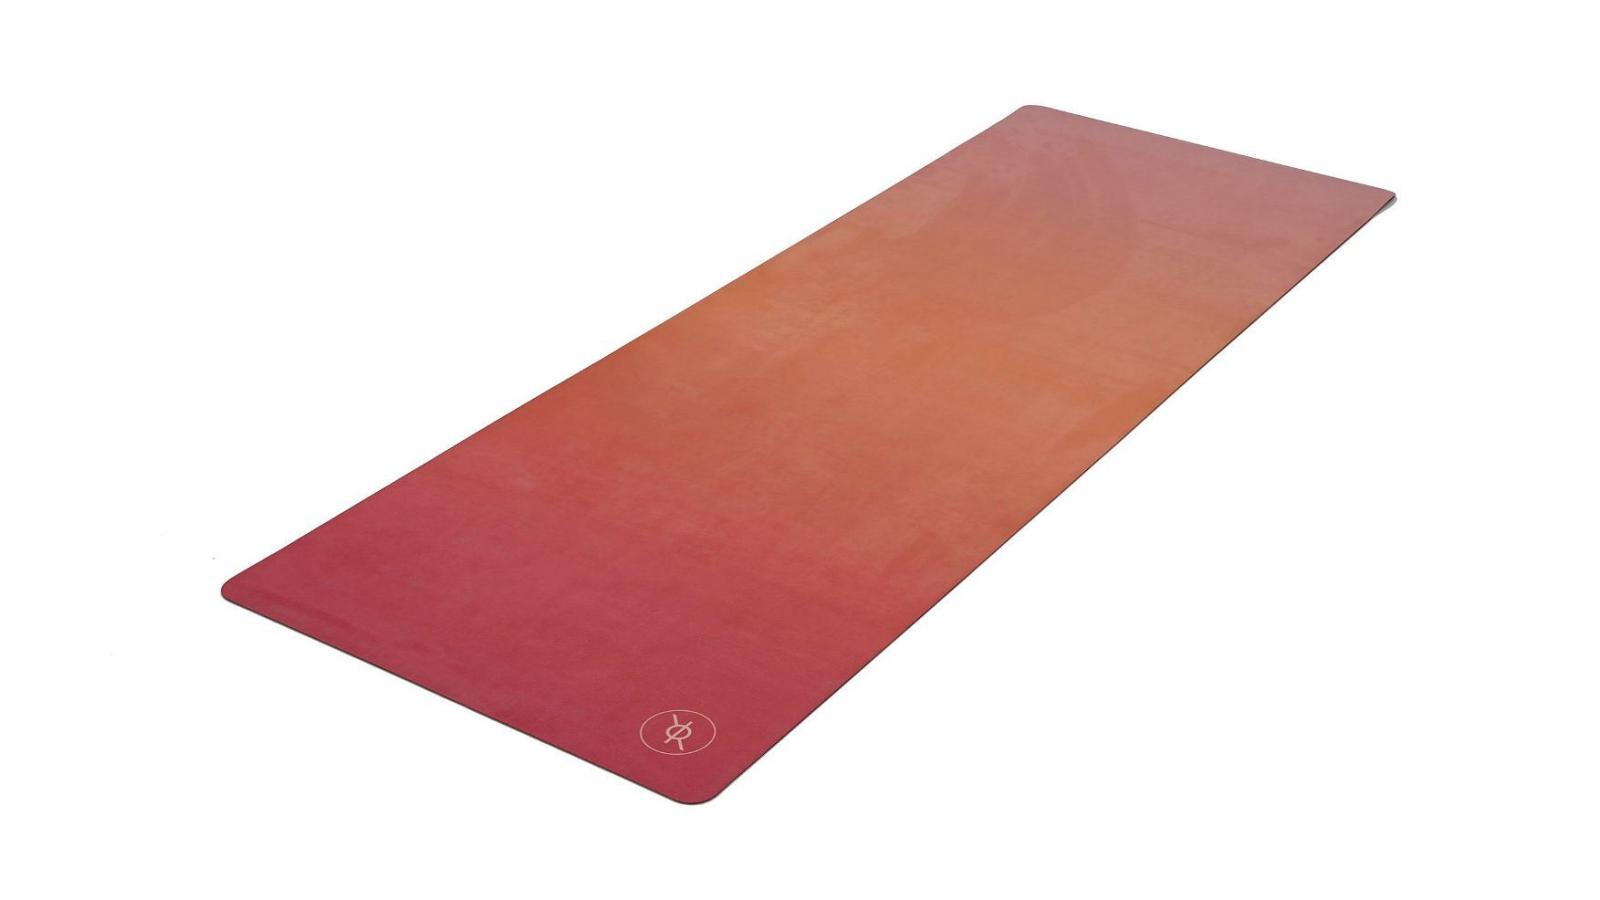 Besonders exclusive und hochwertige Yoga - Matte für dich von Recklessredom in Premium-Qualität.